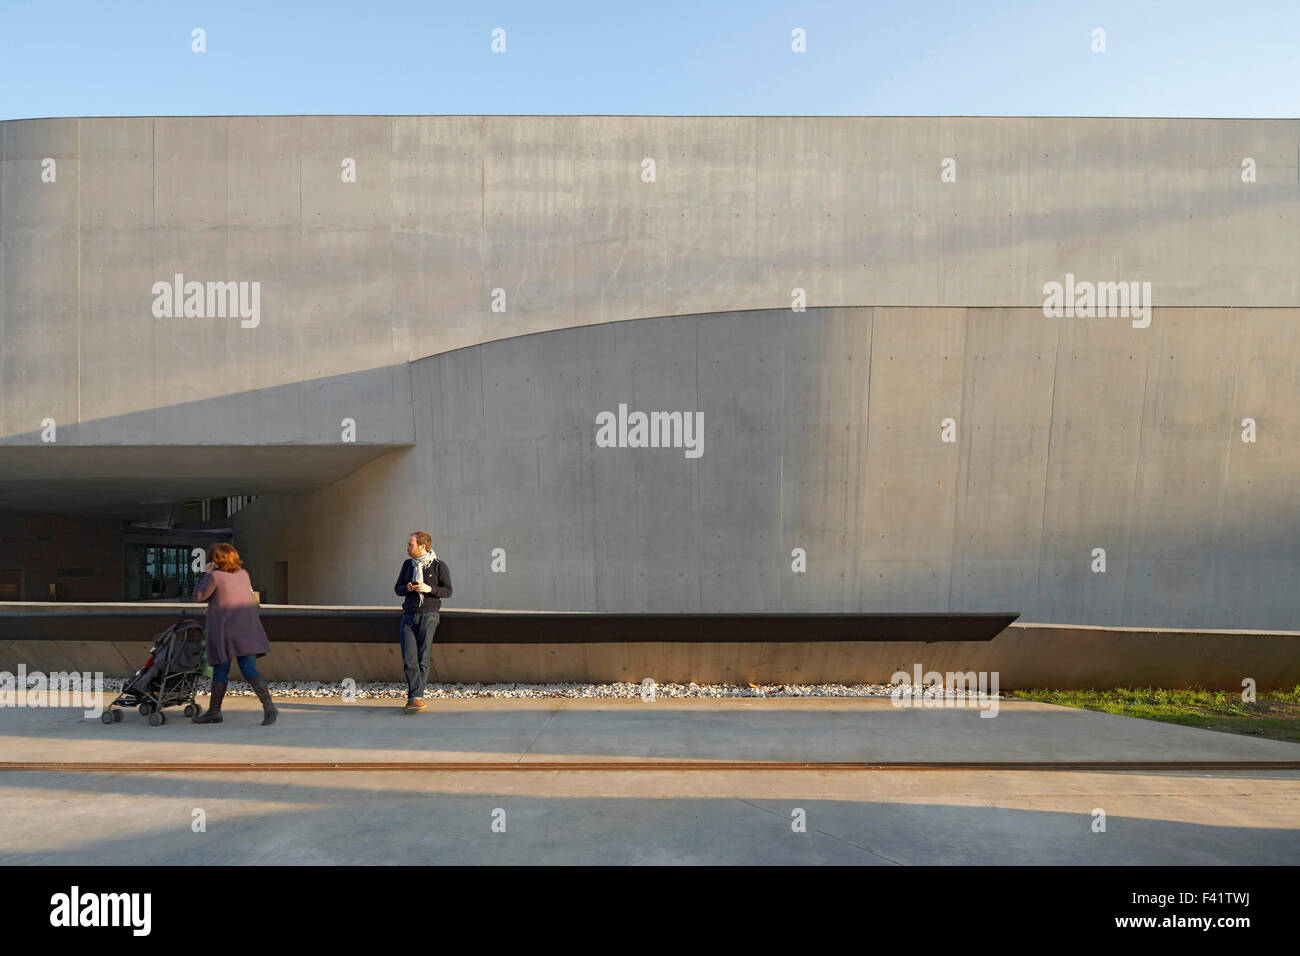 MAXXI Museo Nacional de las artes del siglo XXI, Roma, Italia. Arquitecto: Zaha Hadid Architects, 2009. Vista exterior de hormigón Foto de stock